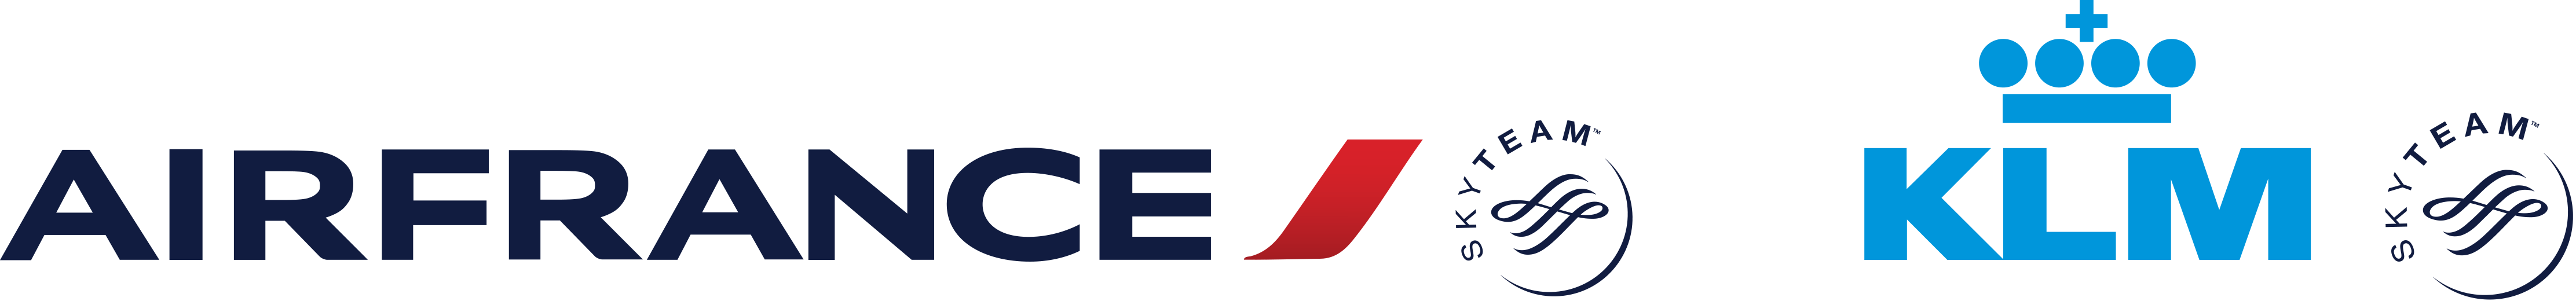 AF-KLM-Logo.jpg PlusPng.com 